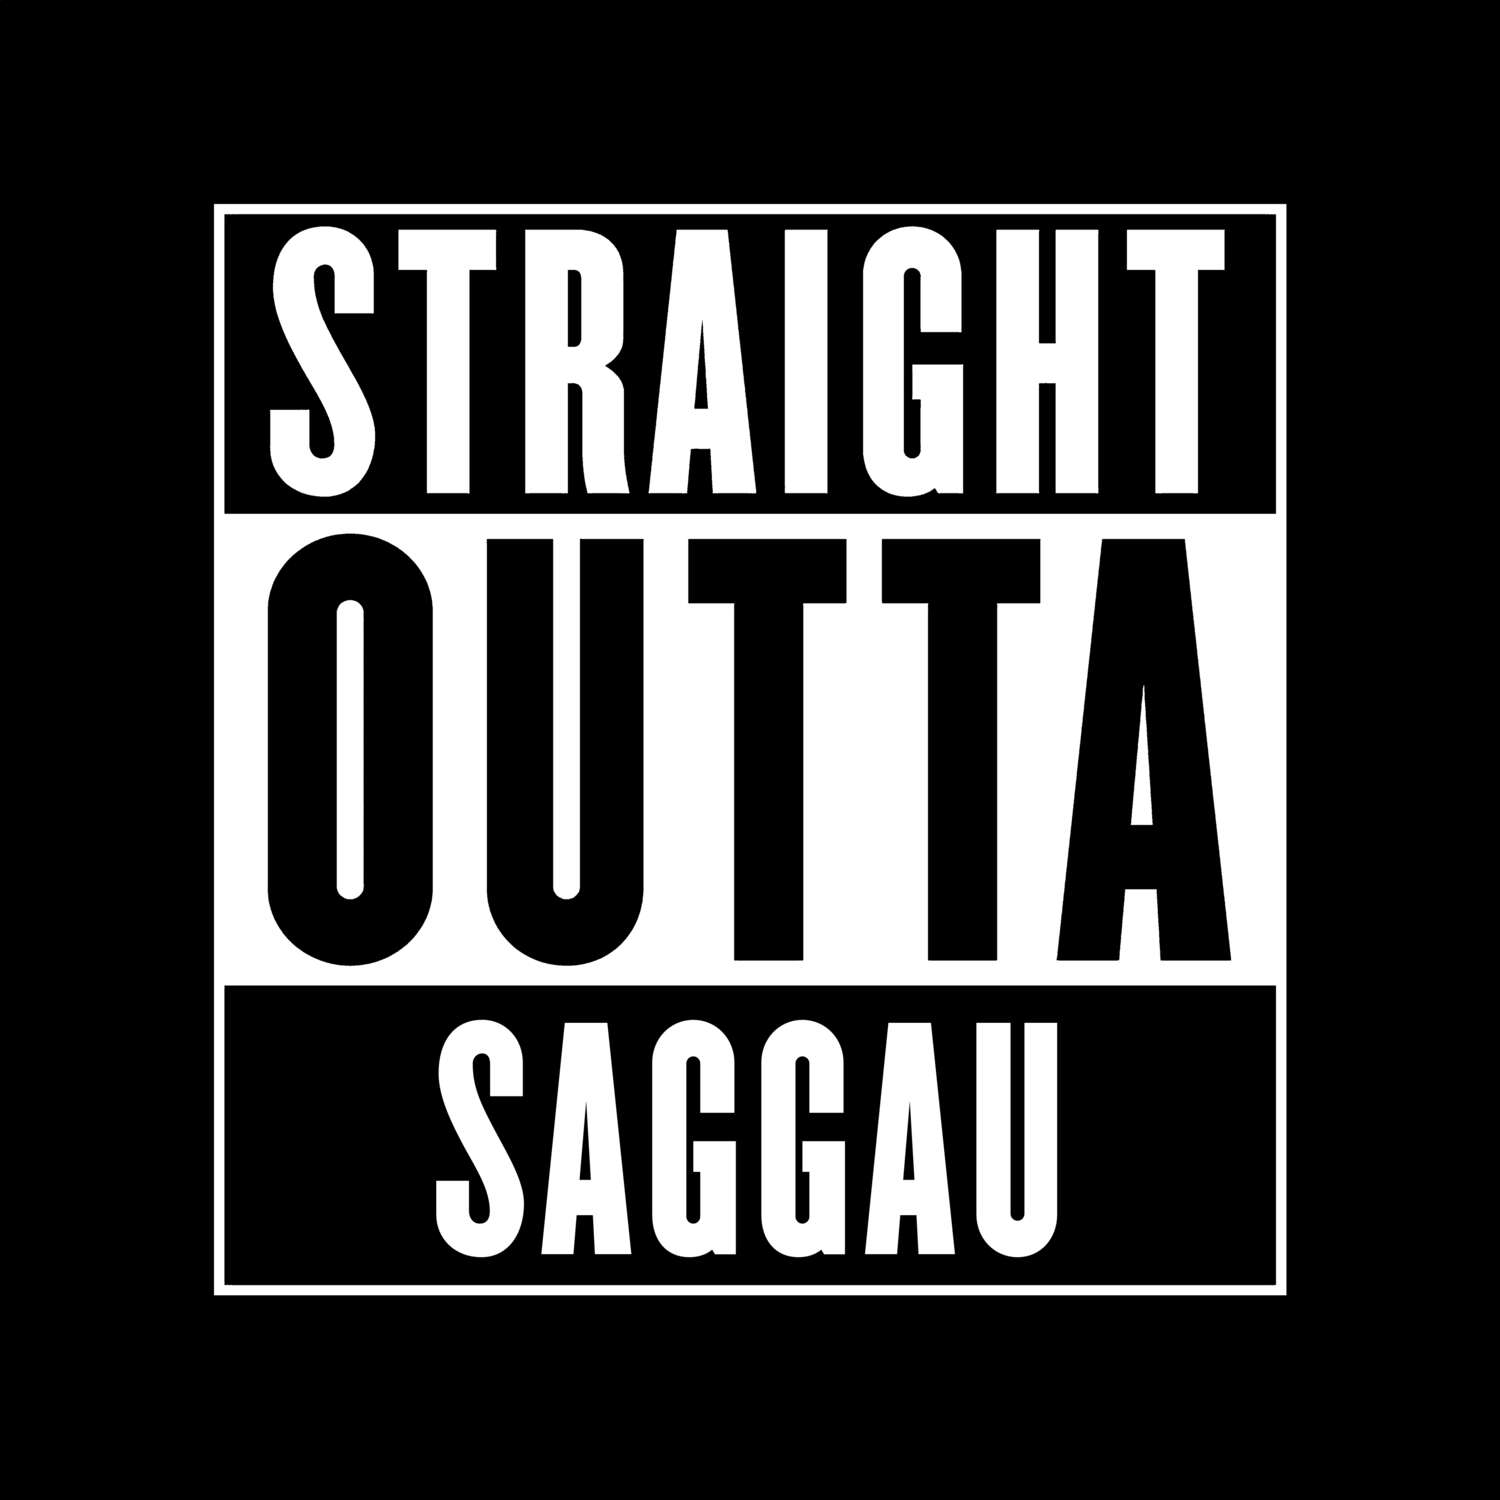 Saggau T-Shirt »Straight Outta«